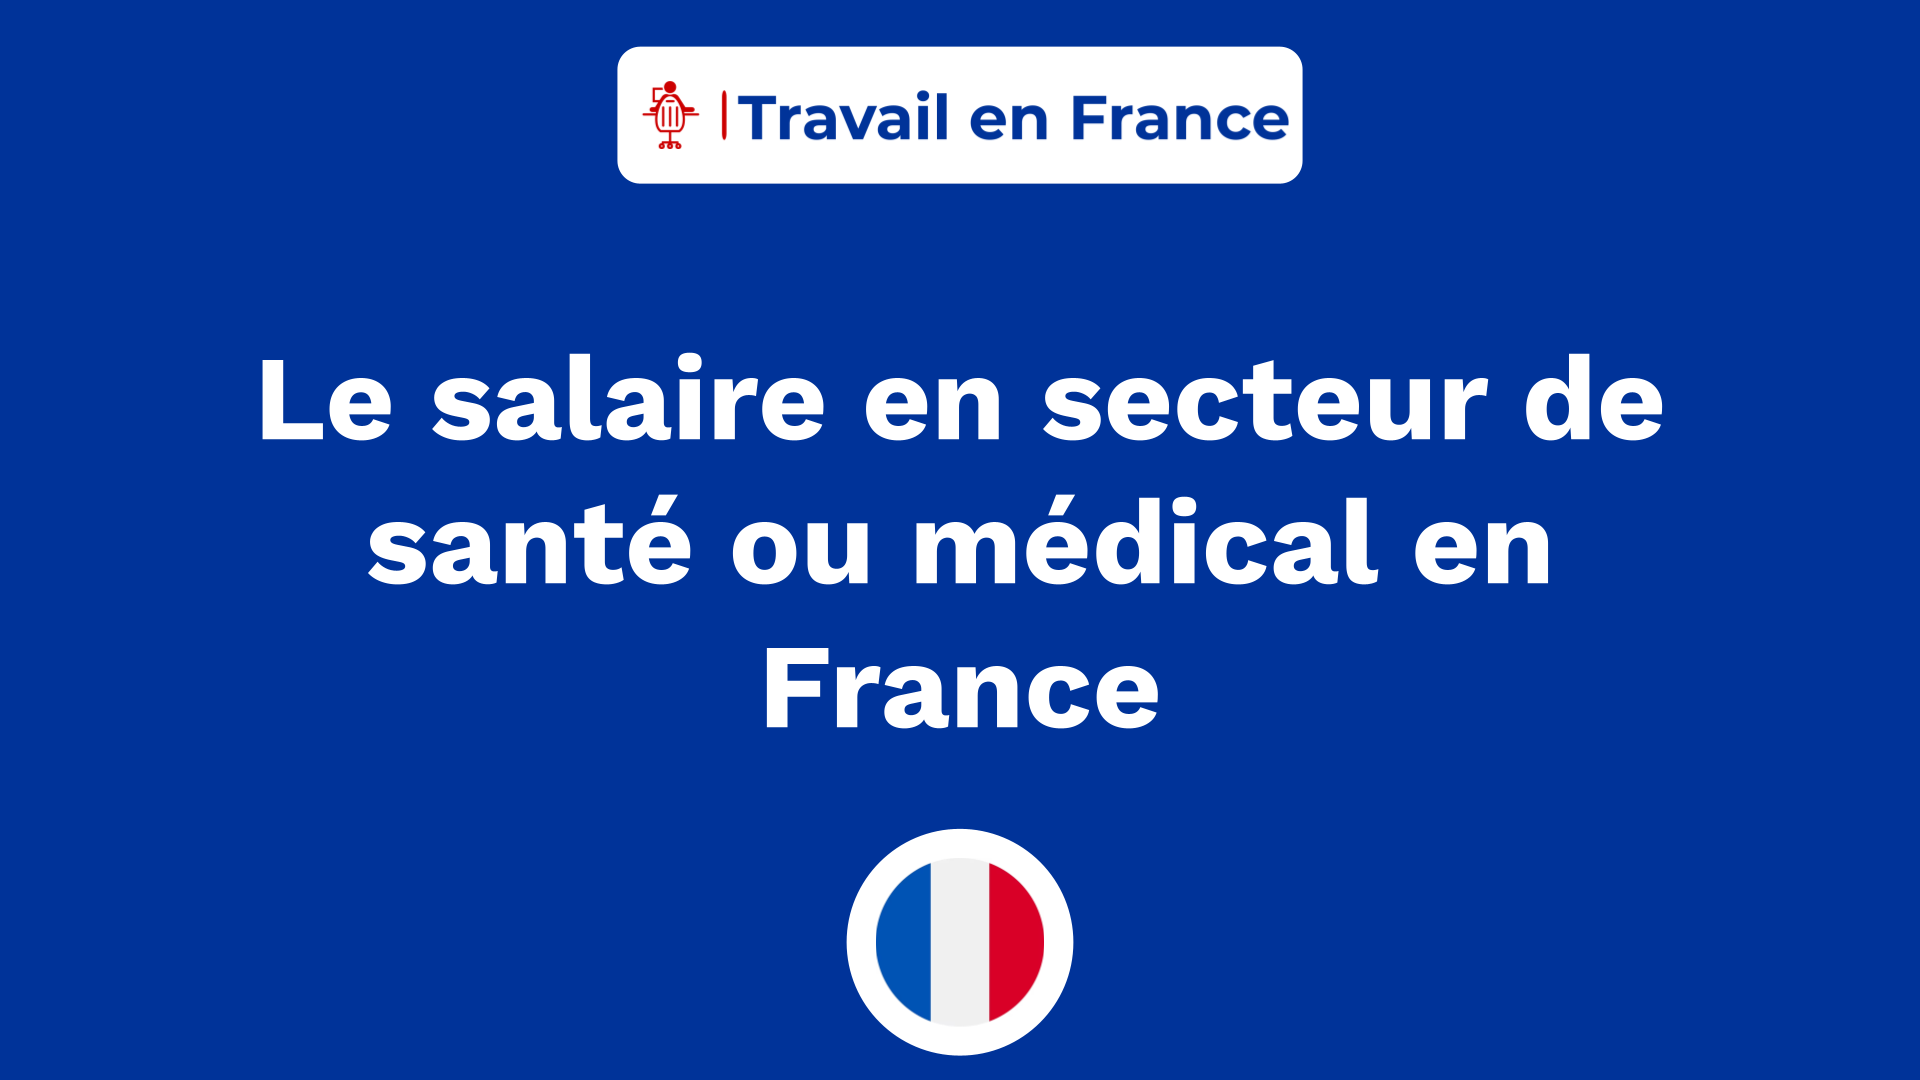 Le salaire en secteur de santé ou médical en France